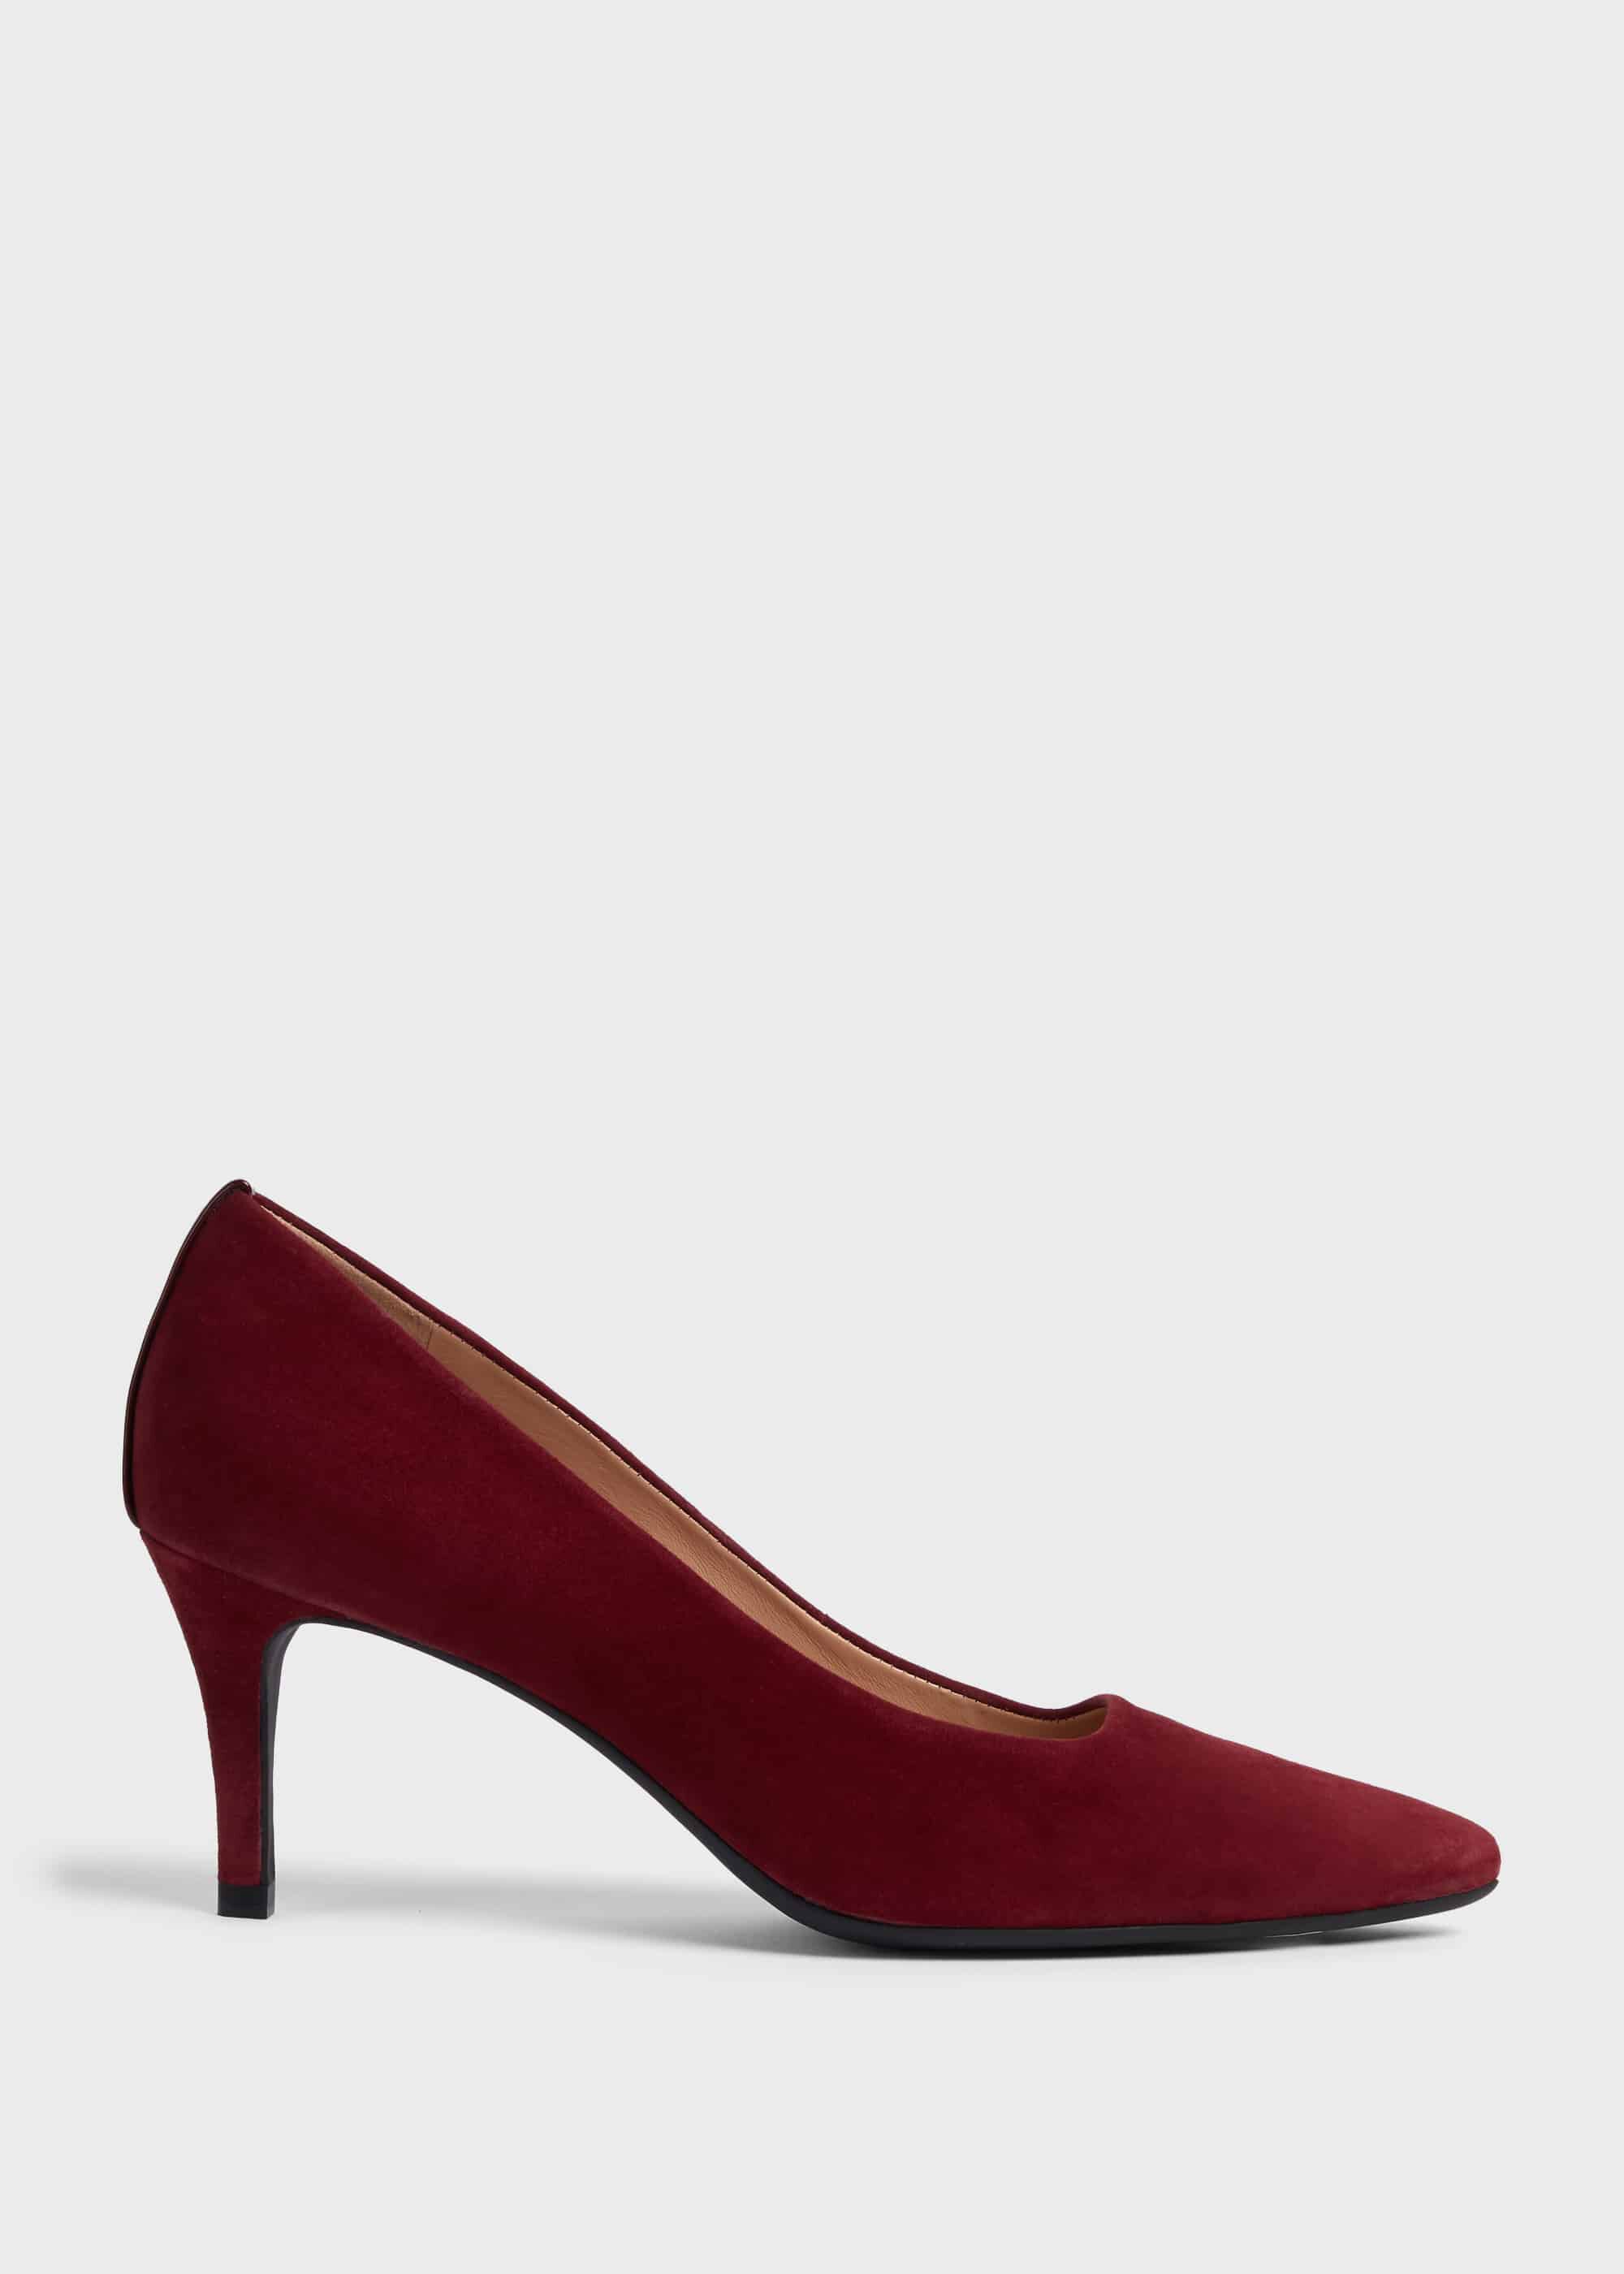 merlot colored heels